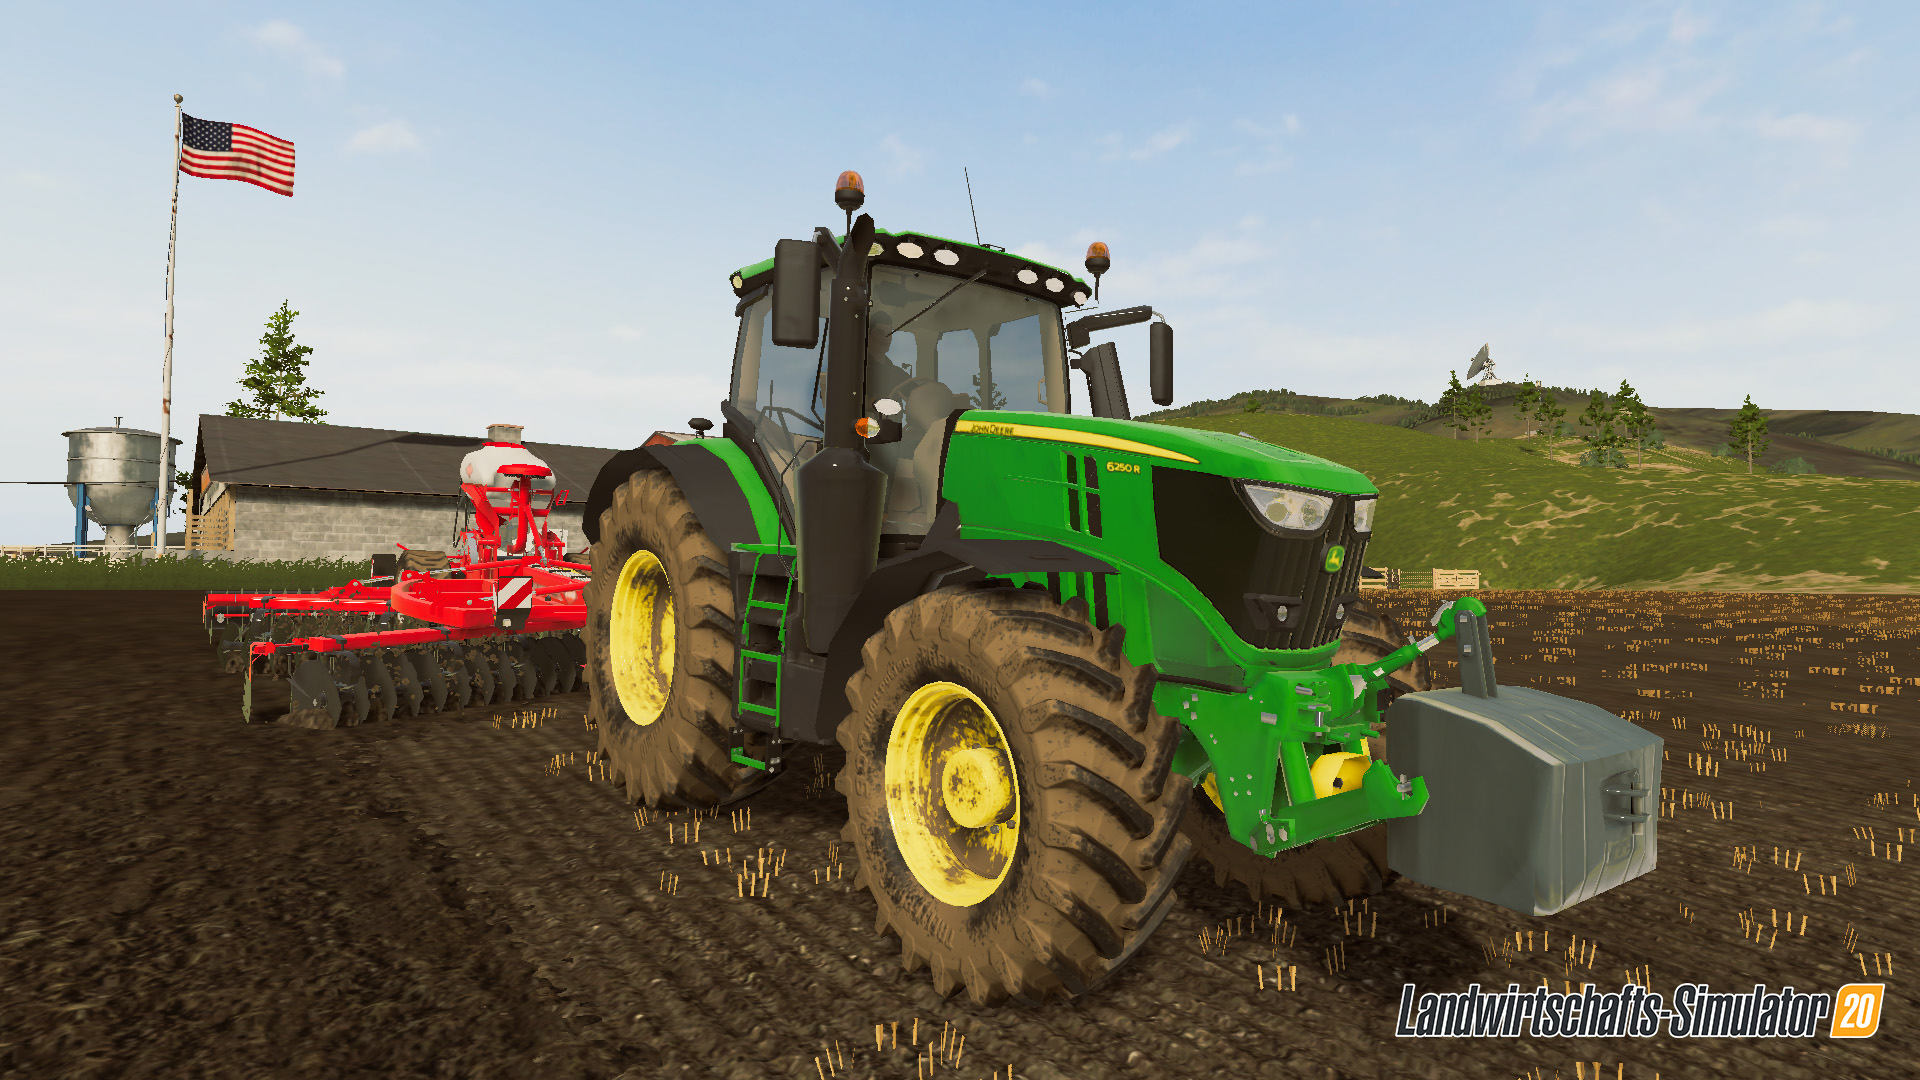 Landwirtschafts-Simulator 20